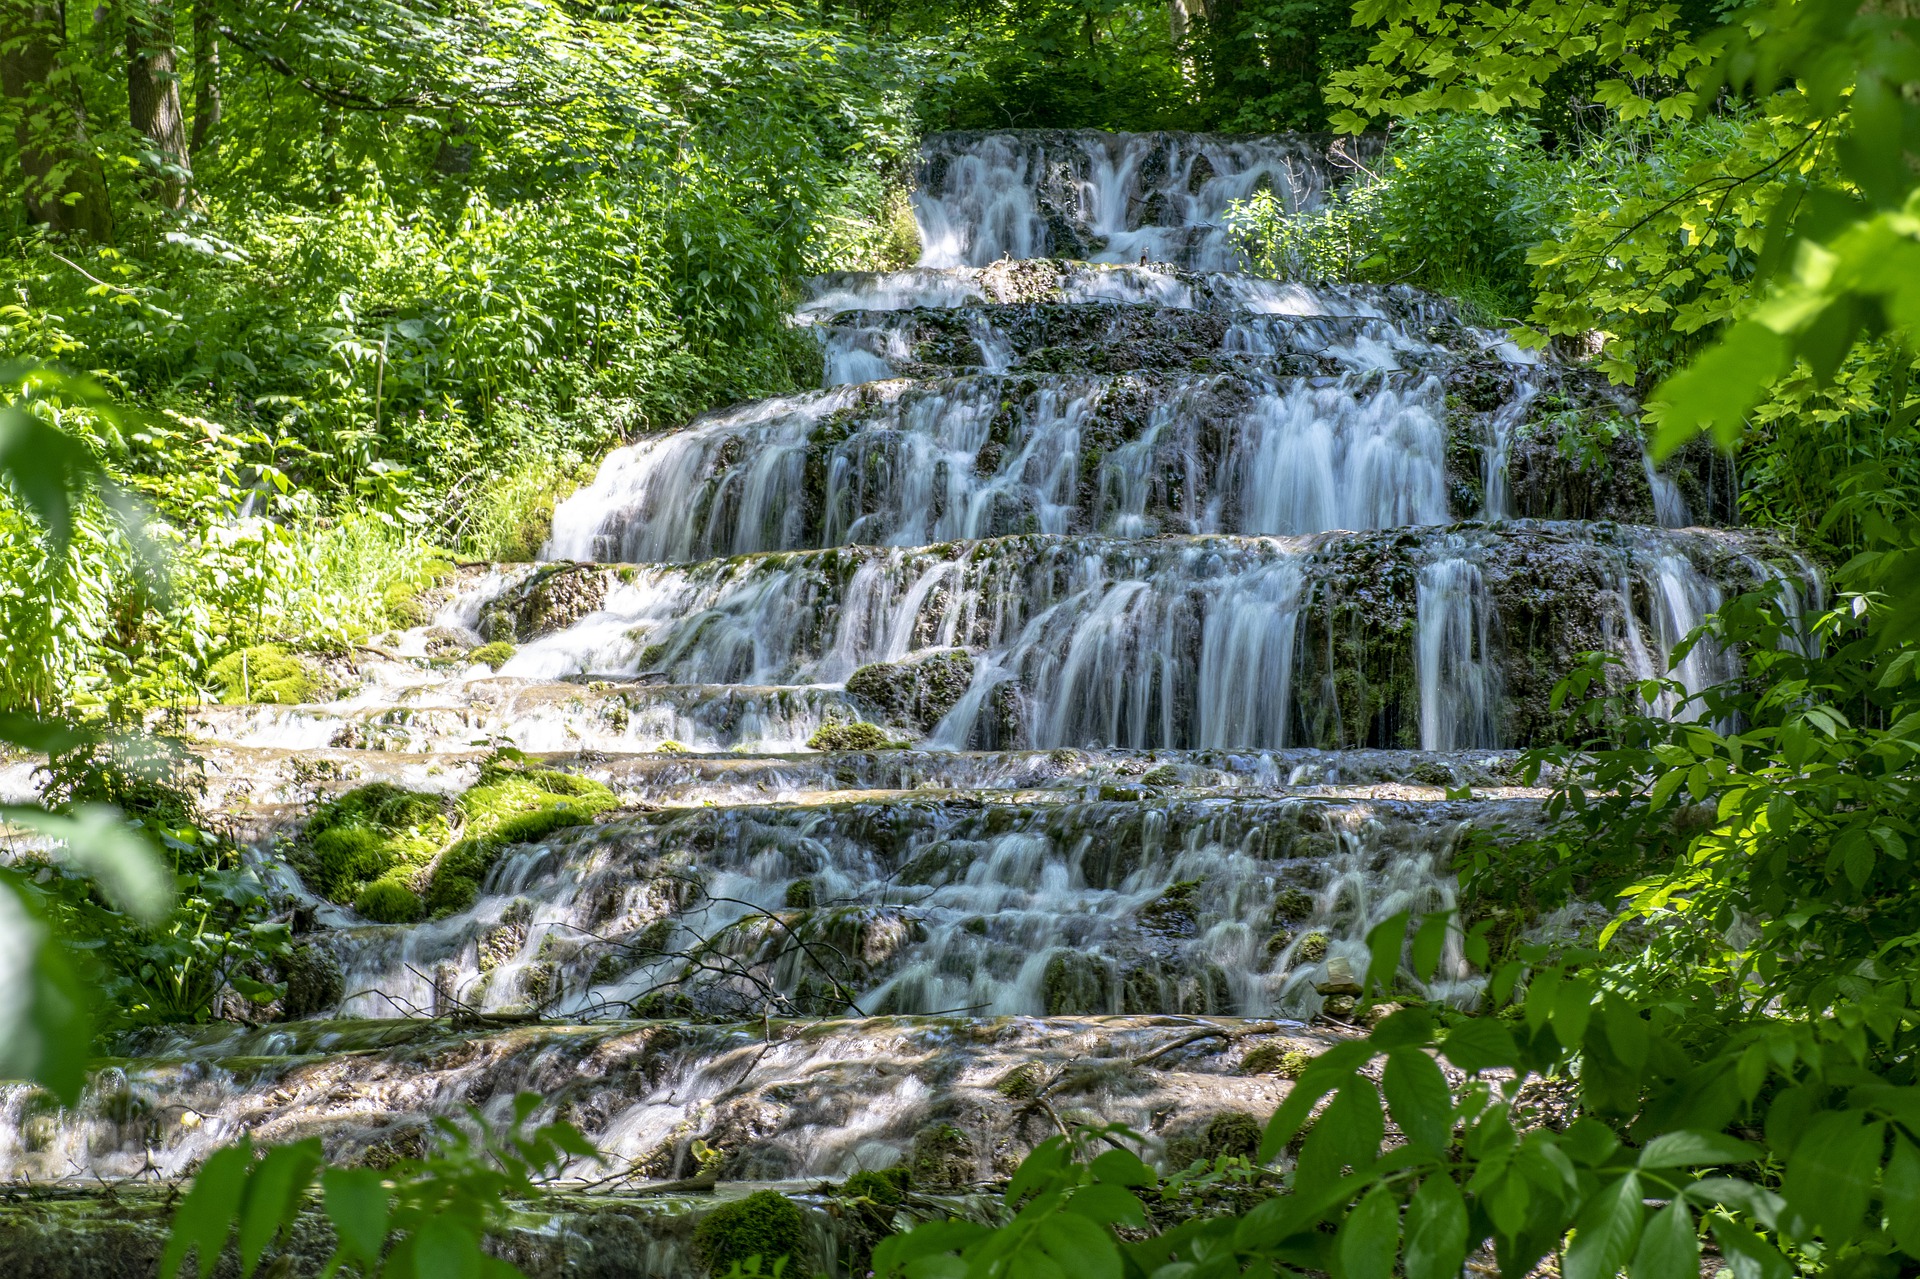 Wasserfall in Lillafüred wurde trocken gelegt